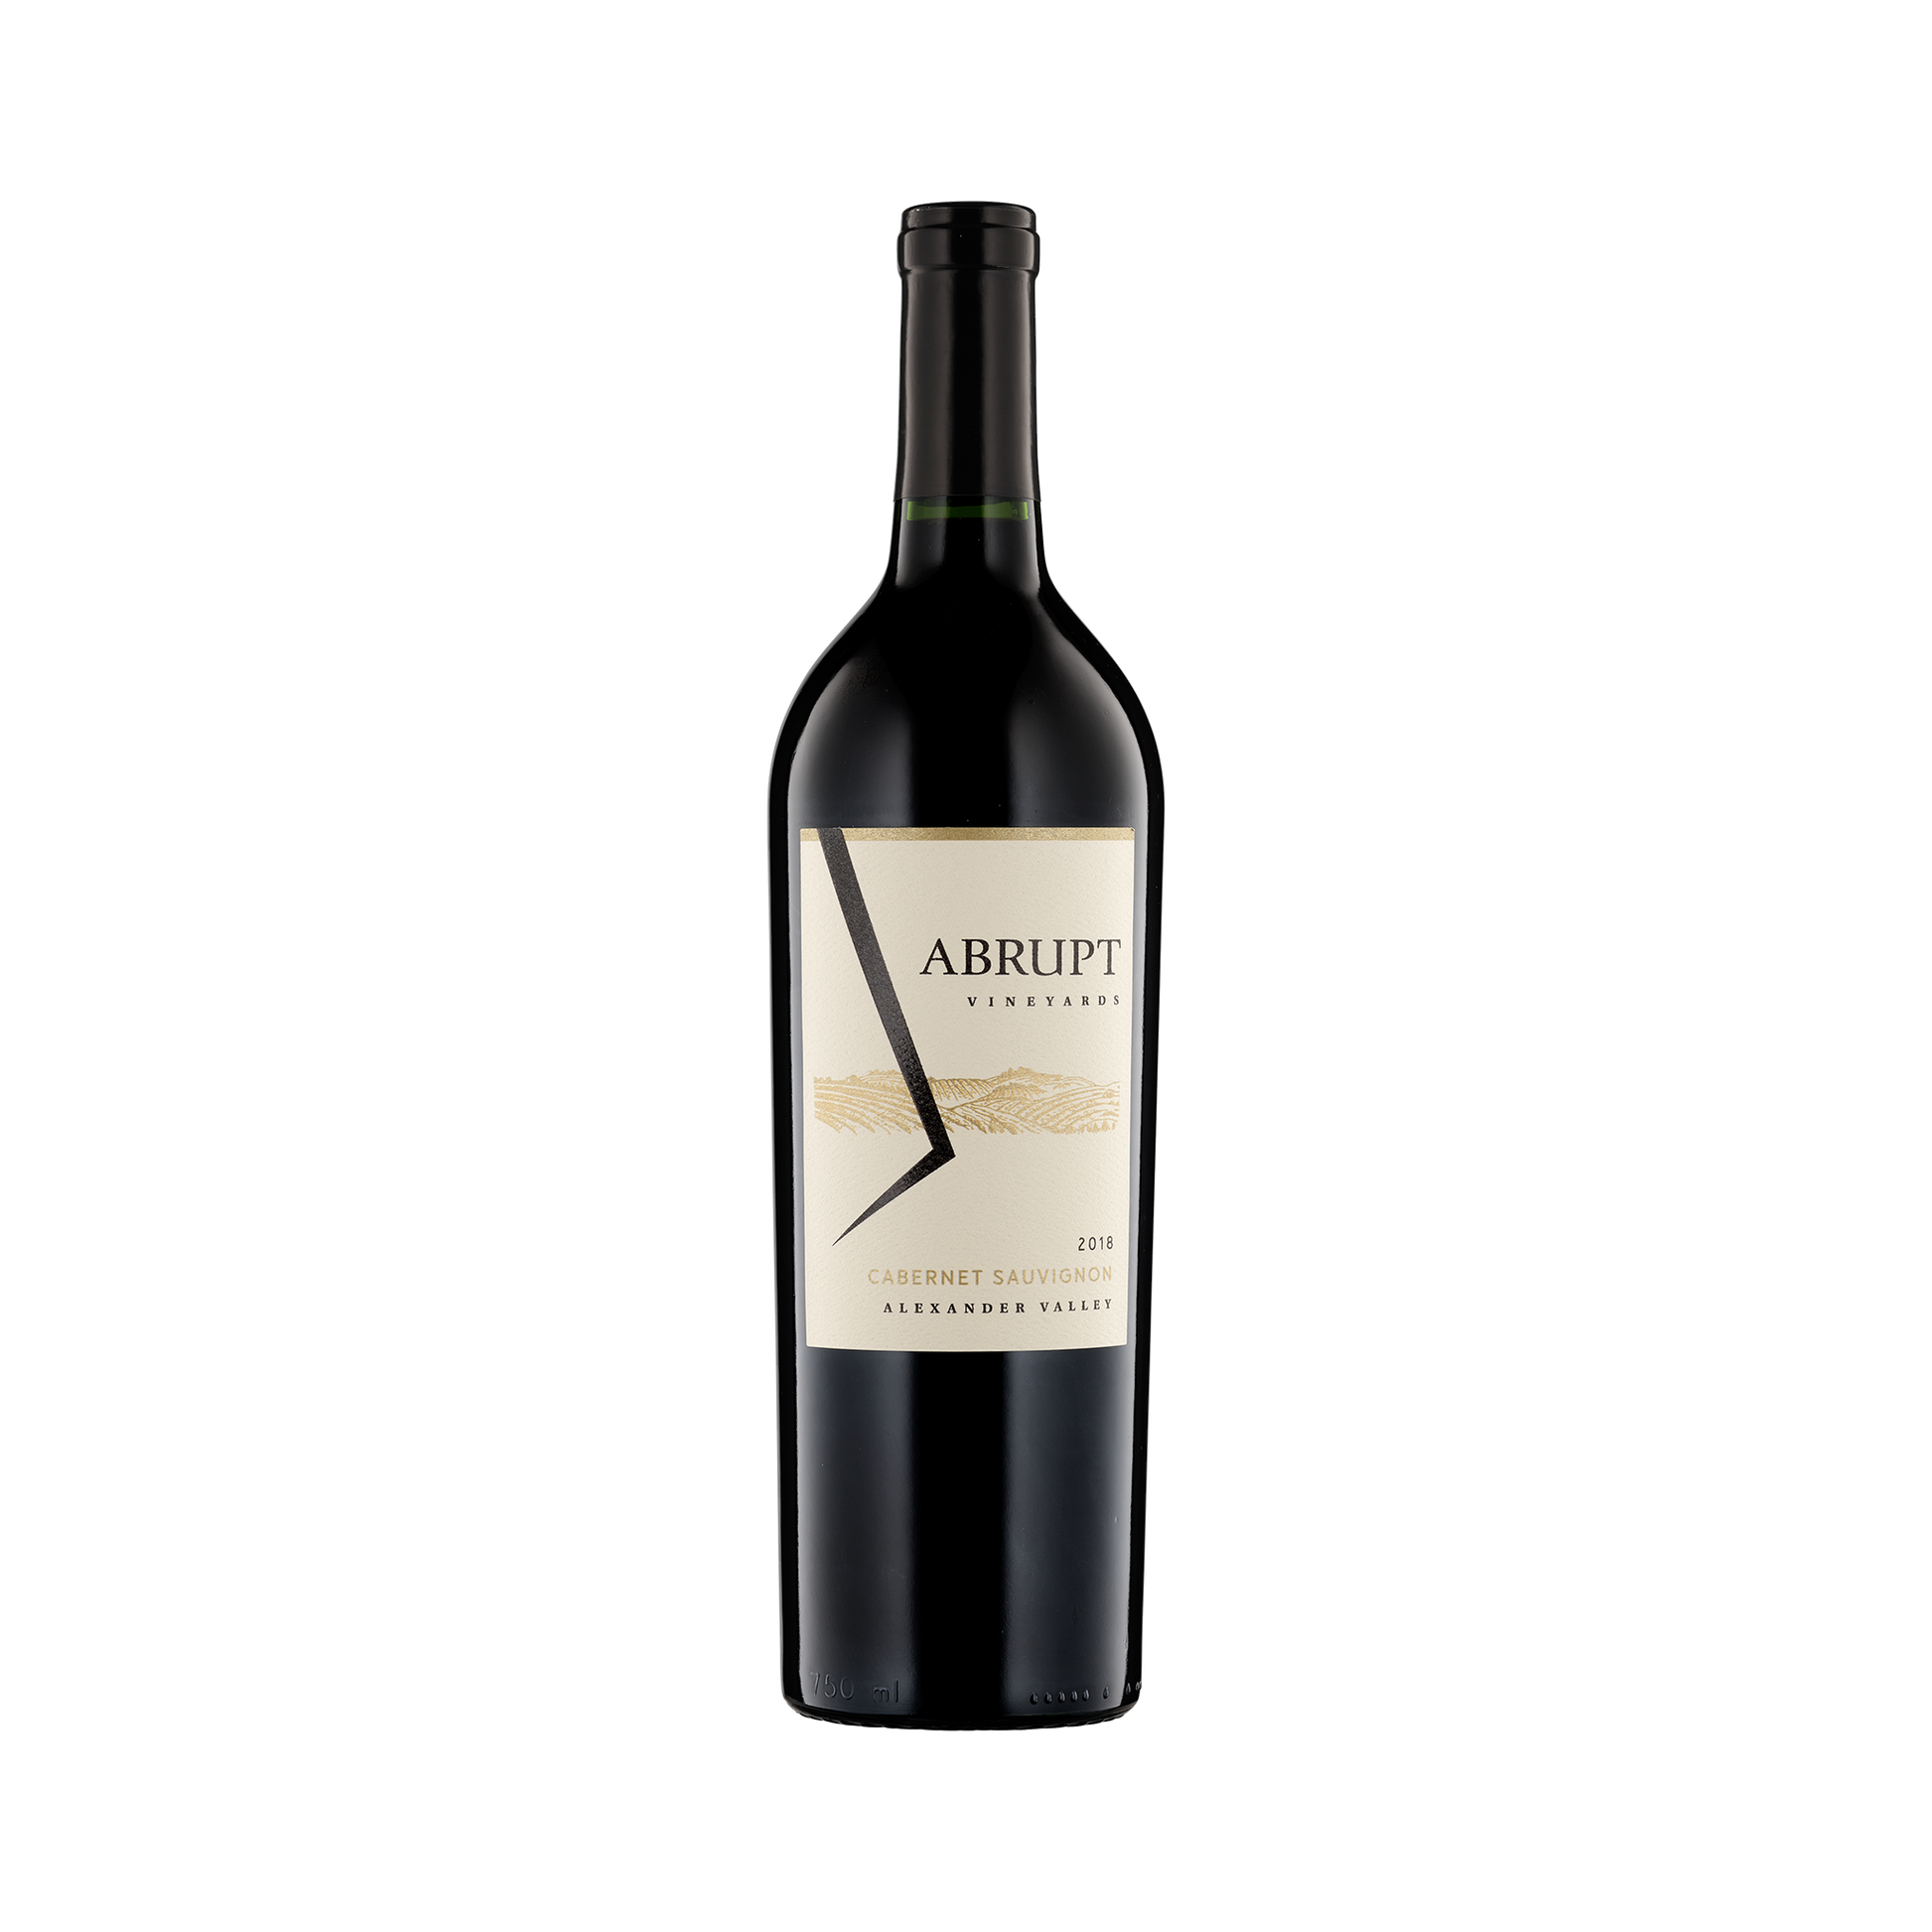 A bottle of Abrupt Vineyards 2018 Cabernet Sauvignon